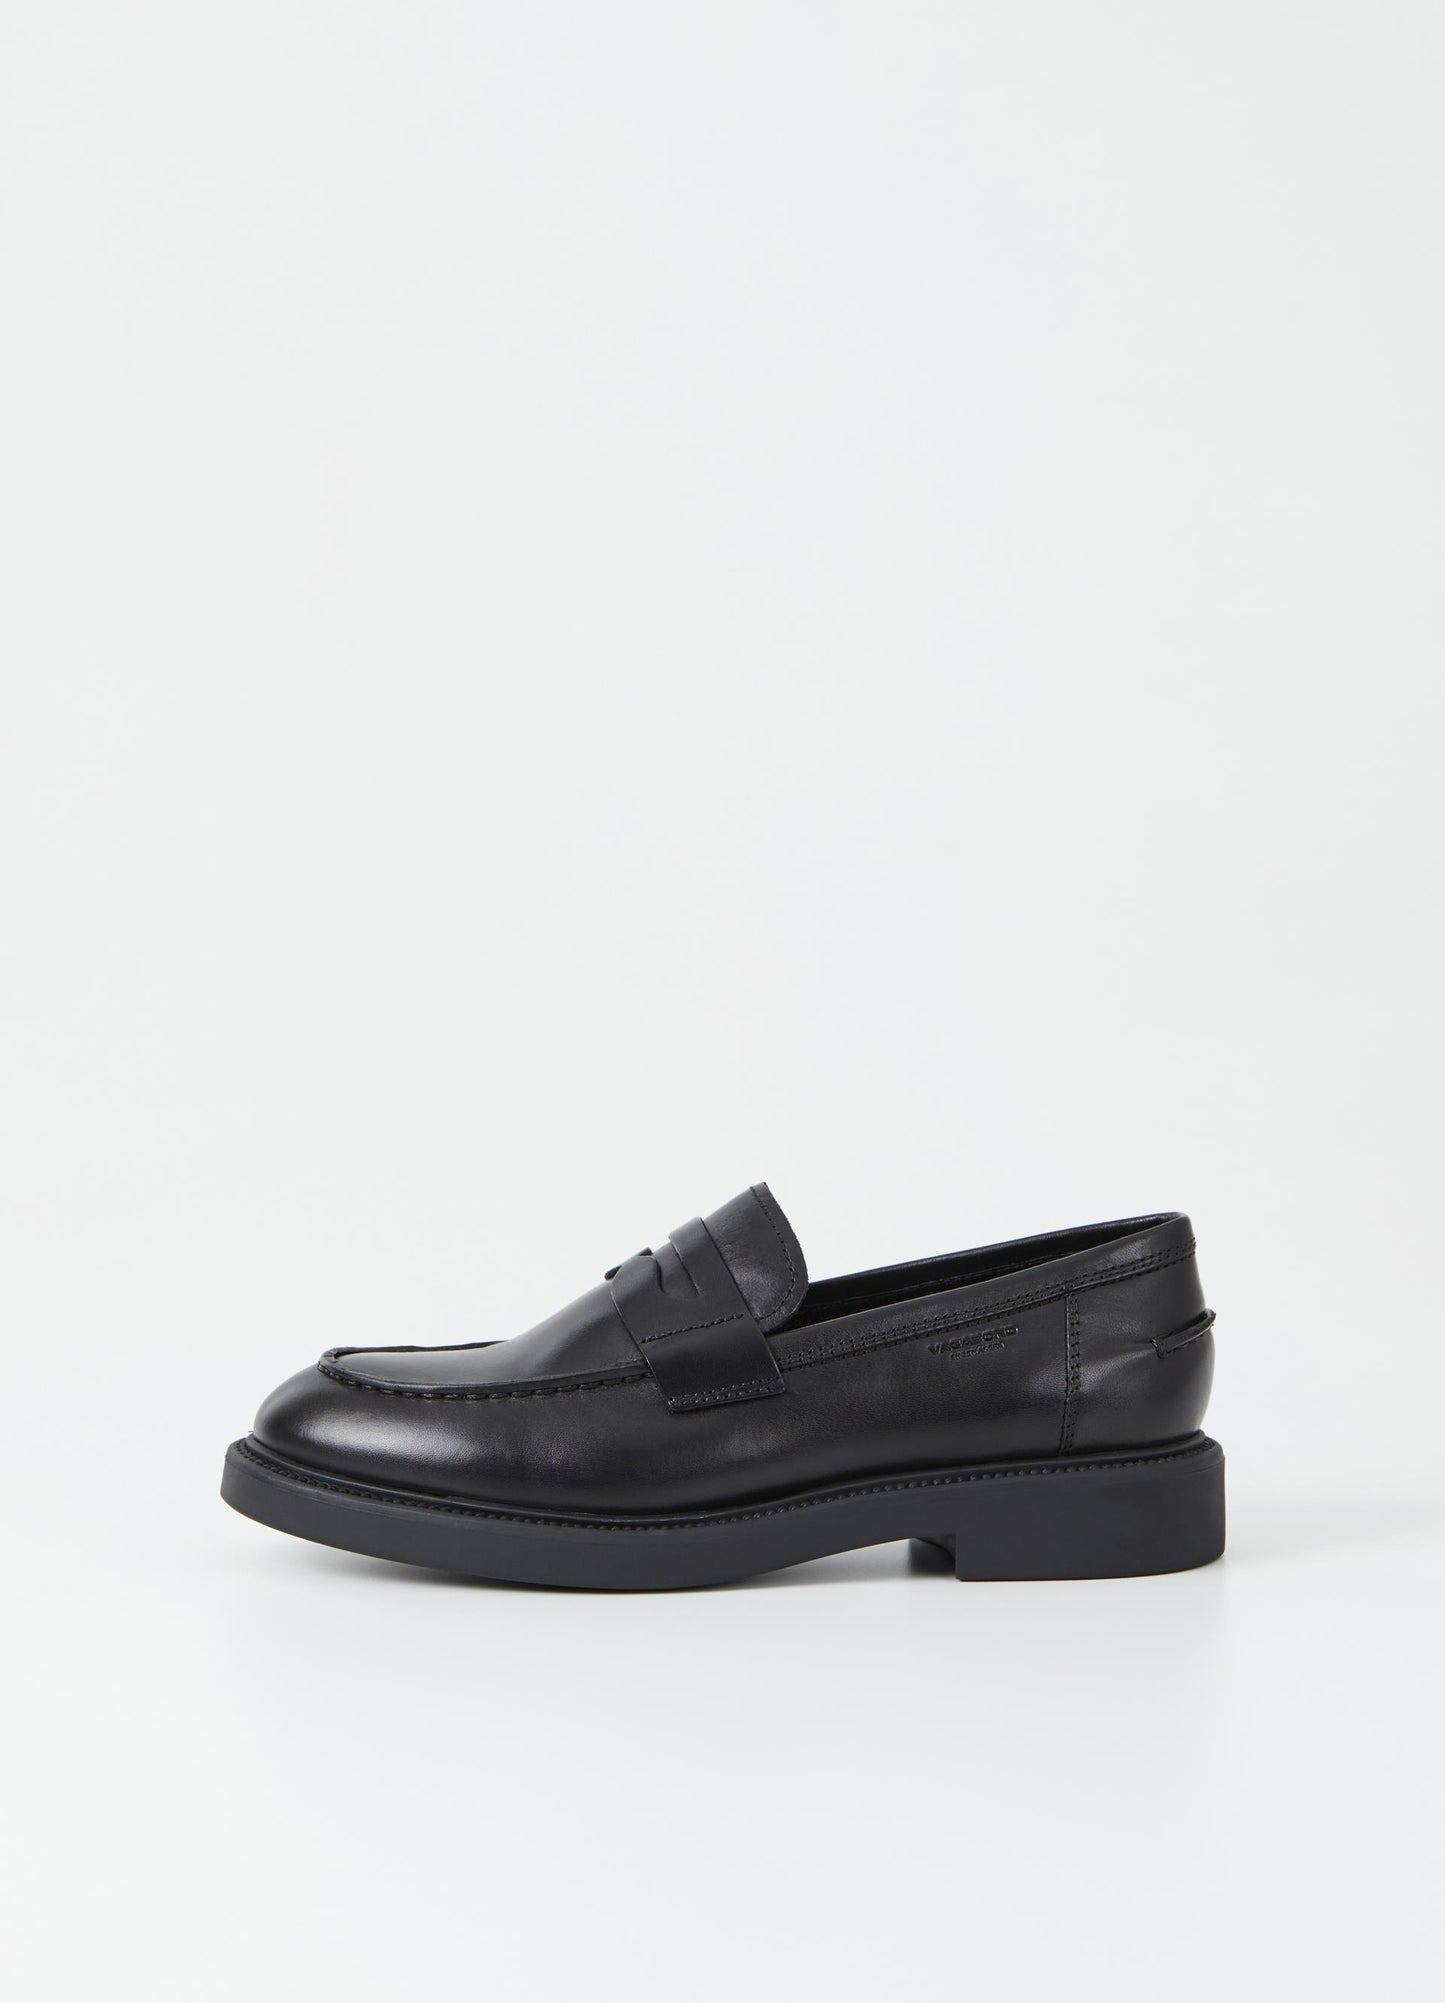 Vagabond Alex W black loafer shoe - Imeldas Shoes Norwich